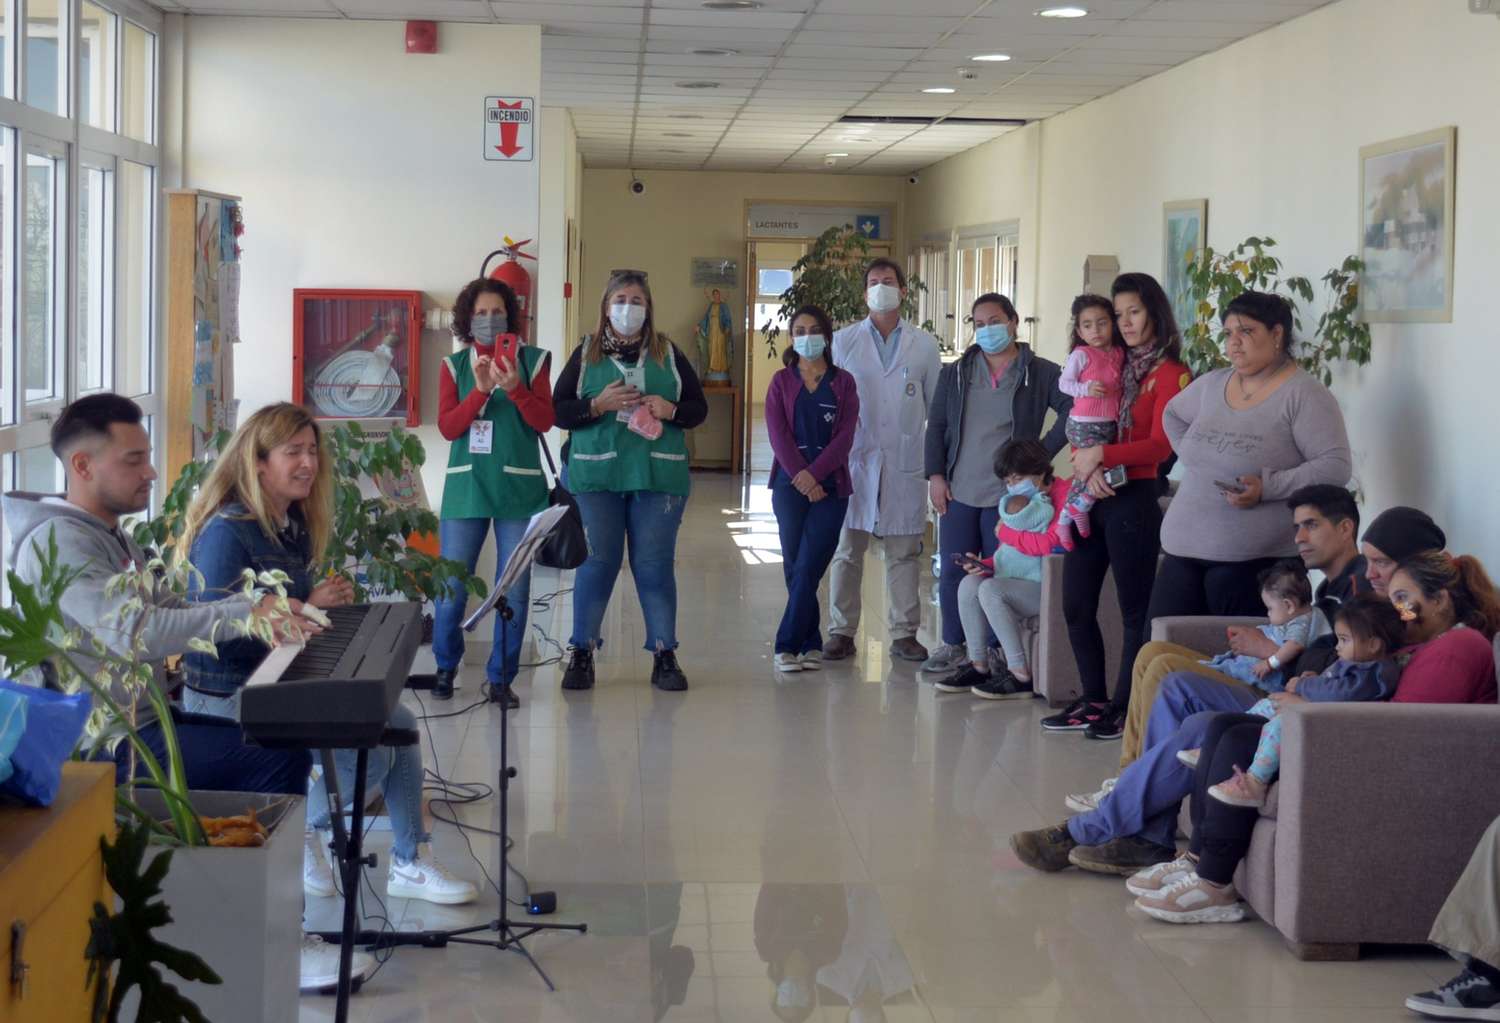 Música, regalos y mucho amor para celebrar el día del niño en el Hospital Debilio Blanco Villegas